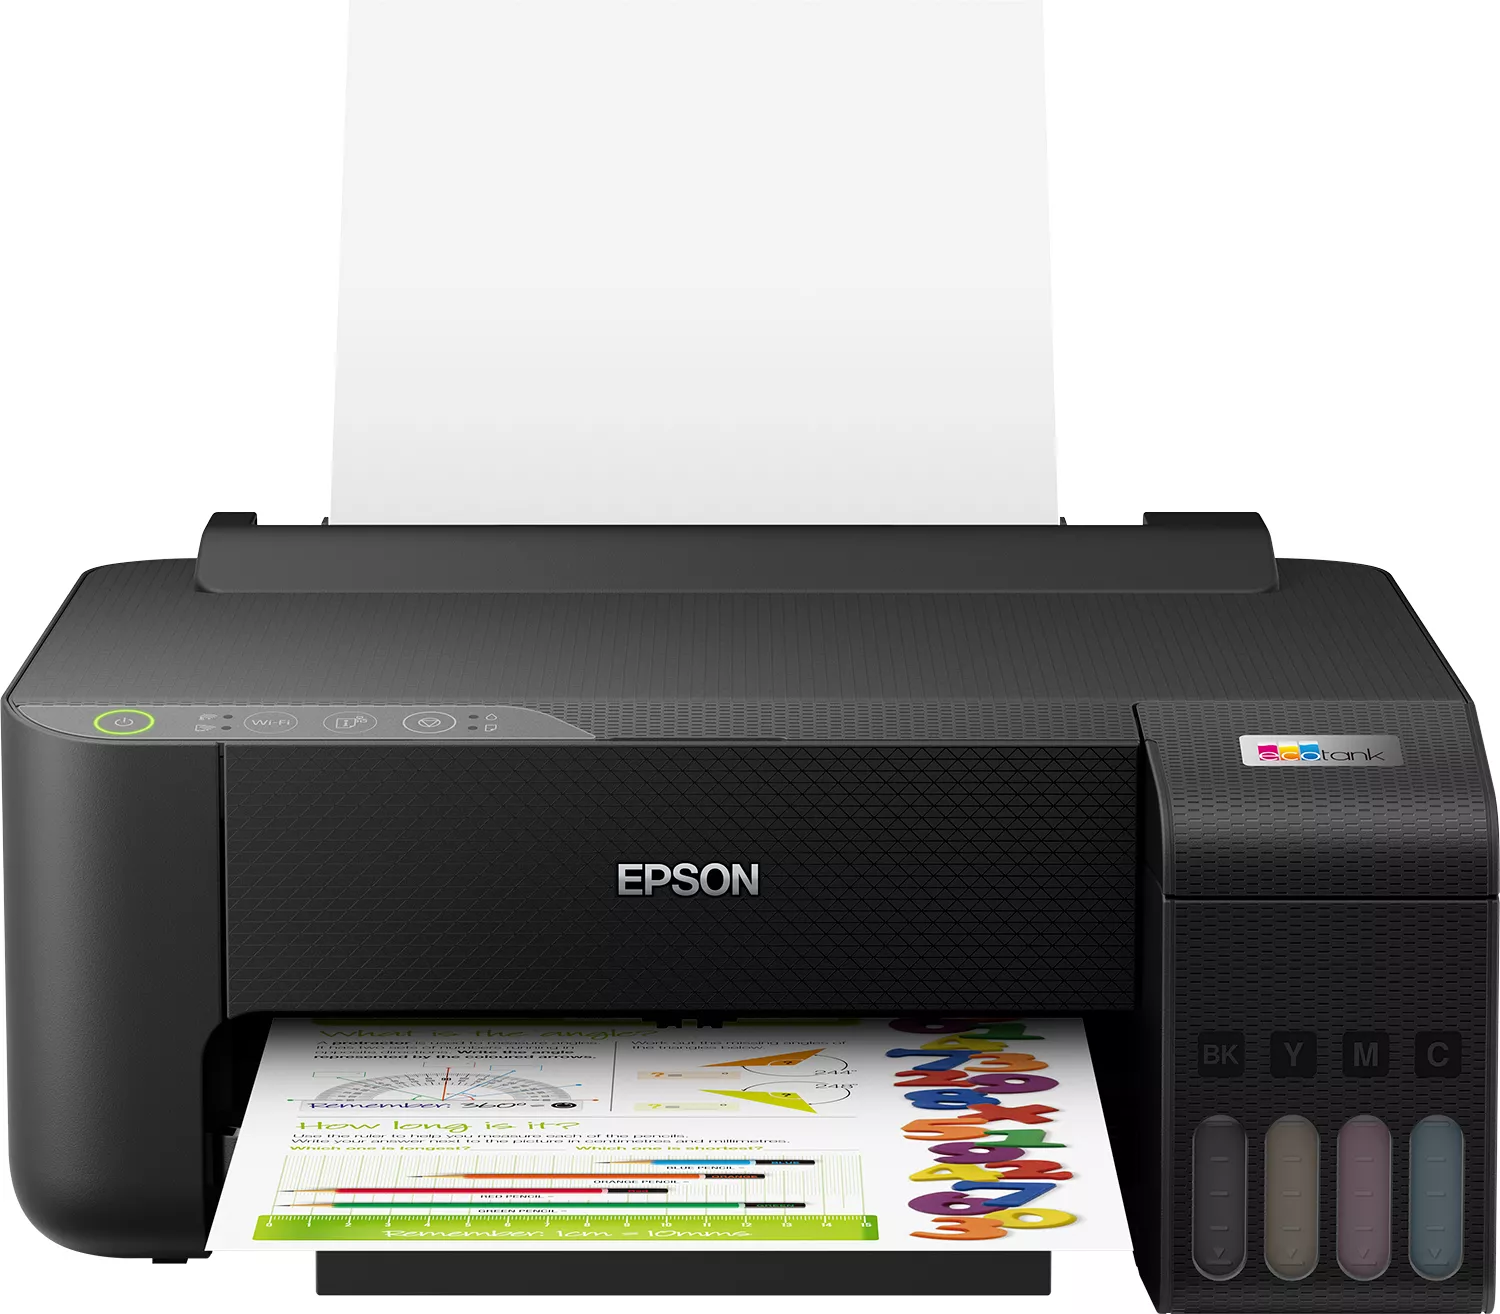 Achat EPSON EcoTank ET-1810 Printer colour ink-jet refillable A4 et autres produits de la marque Epson